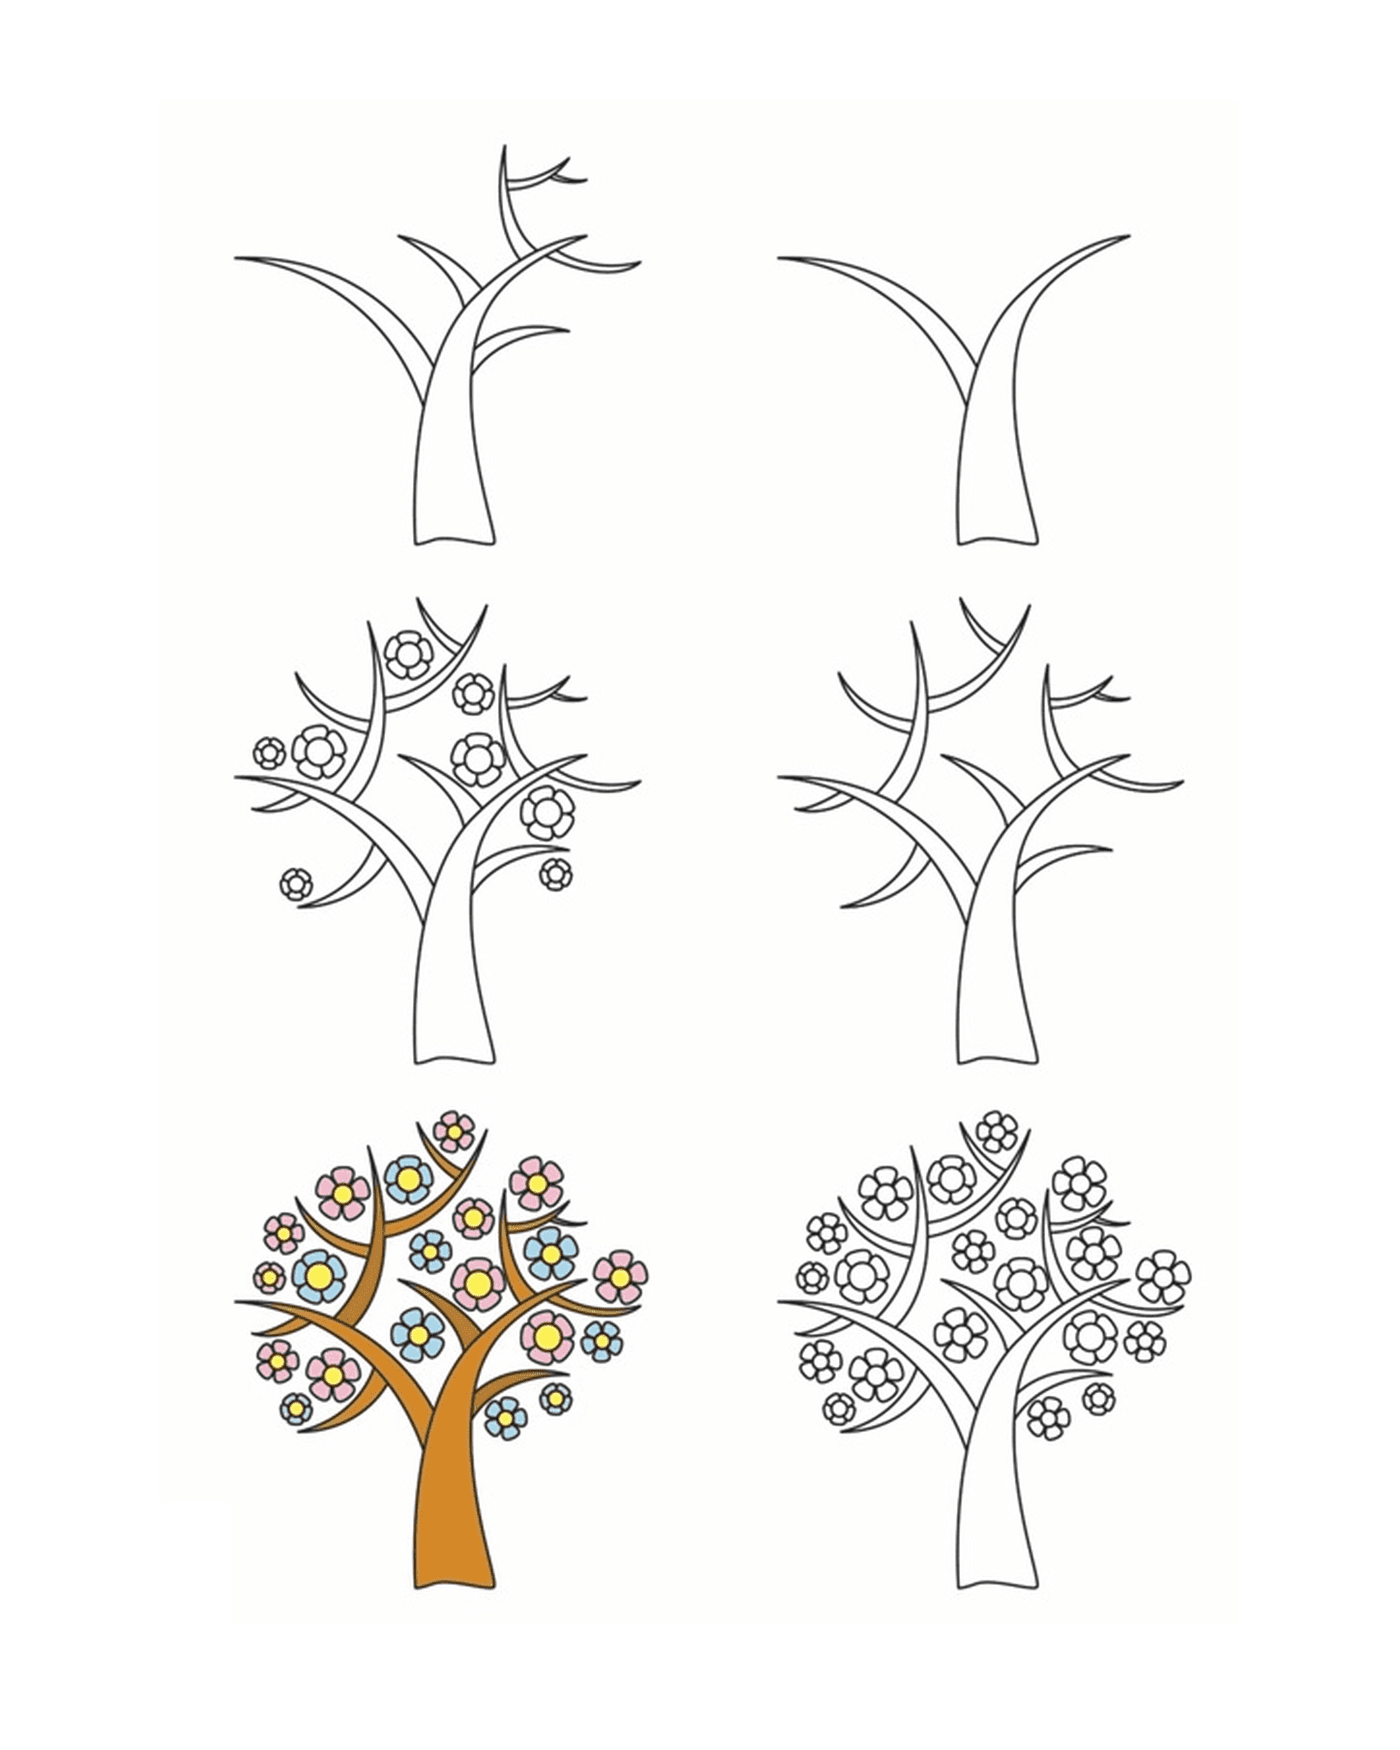  Cómo dibujar un árbol 